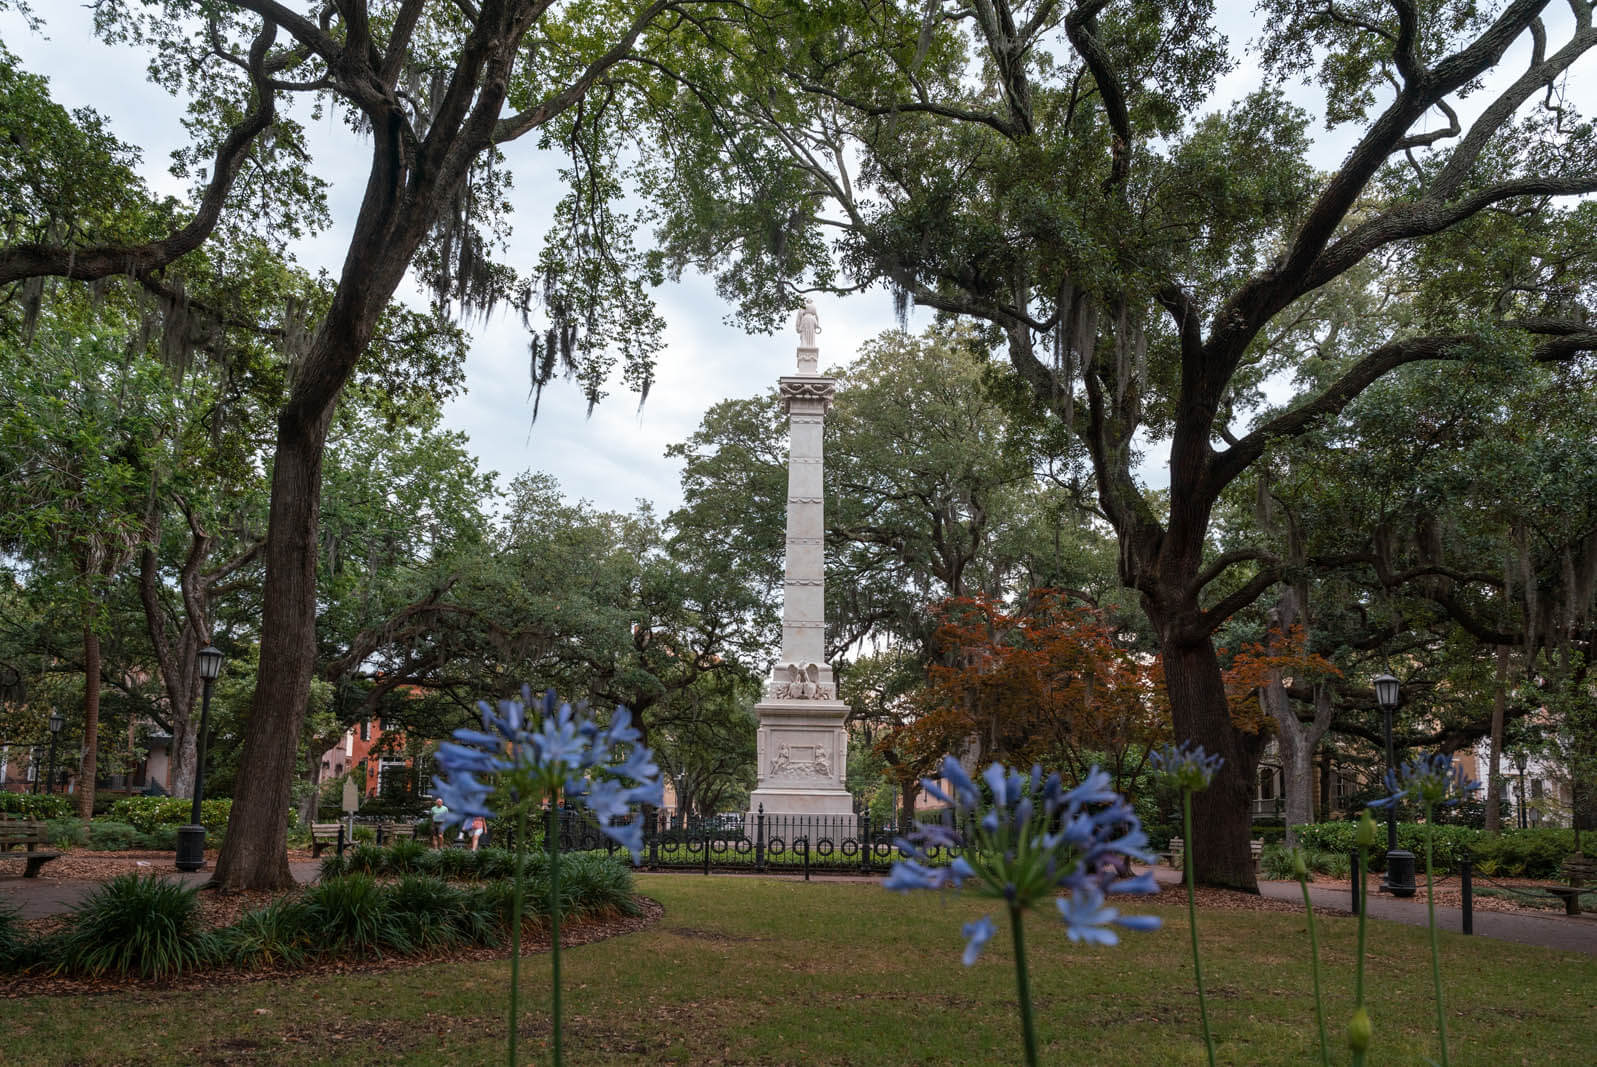 Casimir Pulaski monument in Monterey Square in Savannah